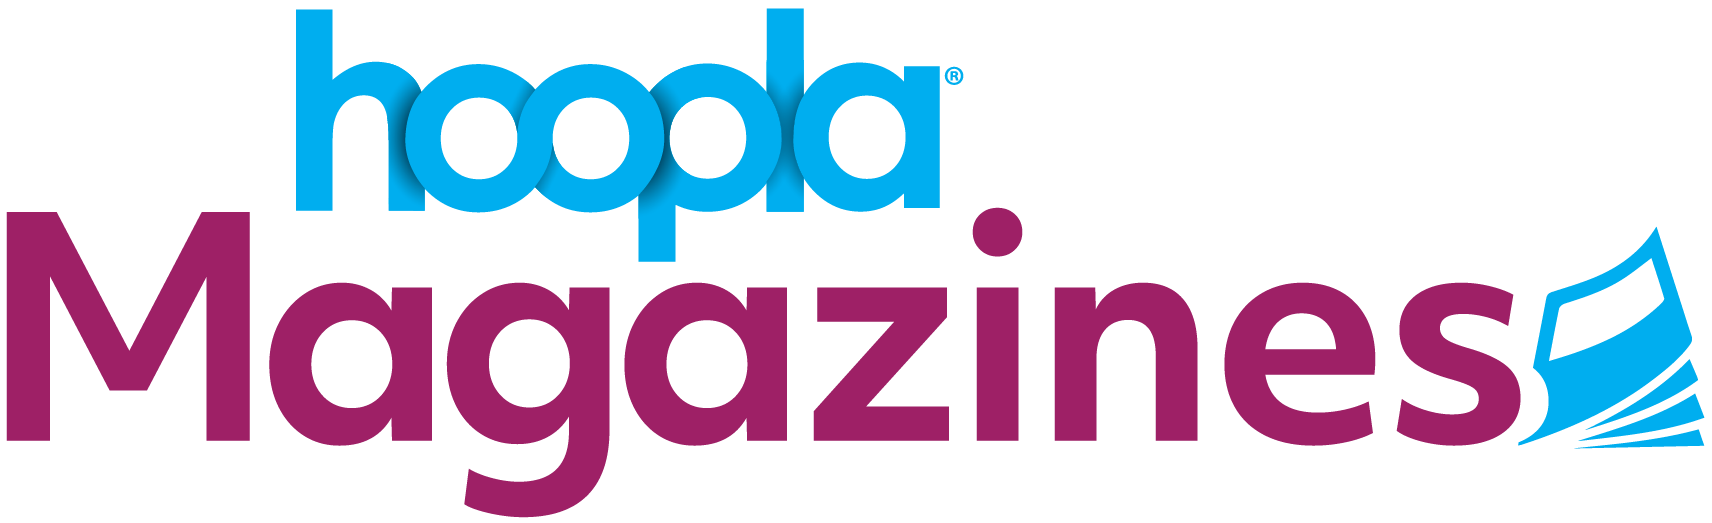 hoopla Magazines logo